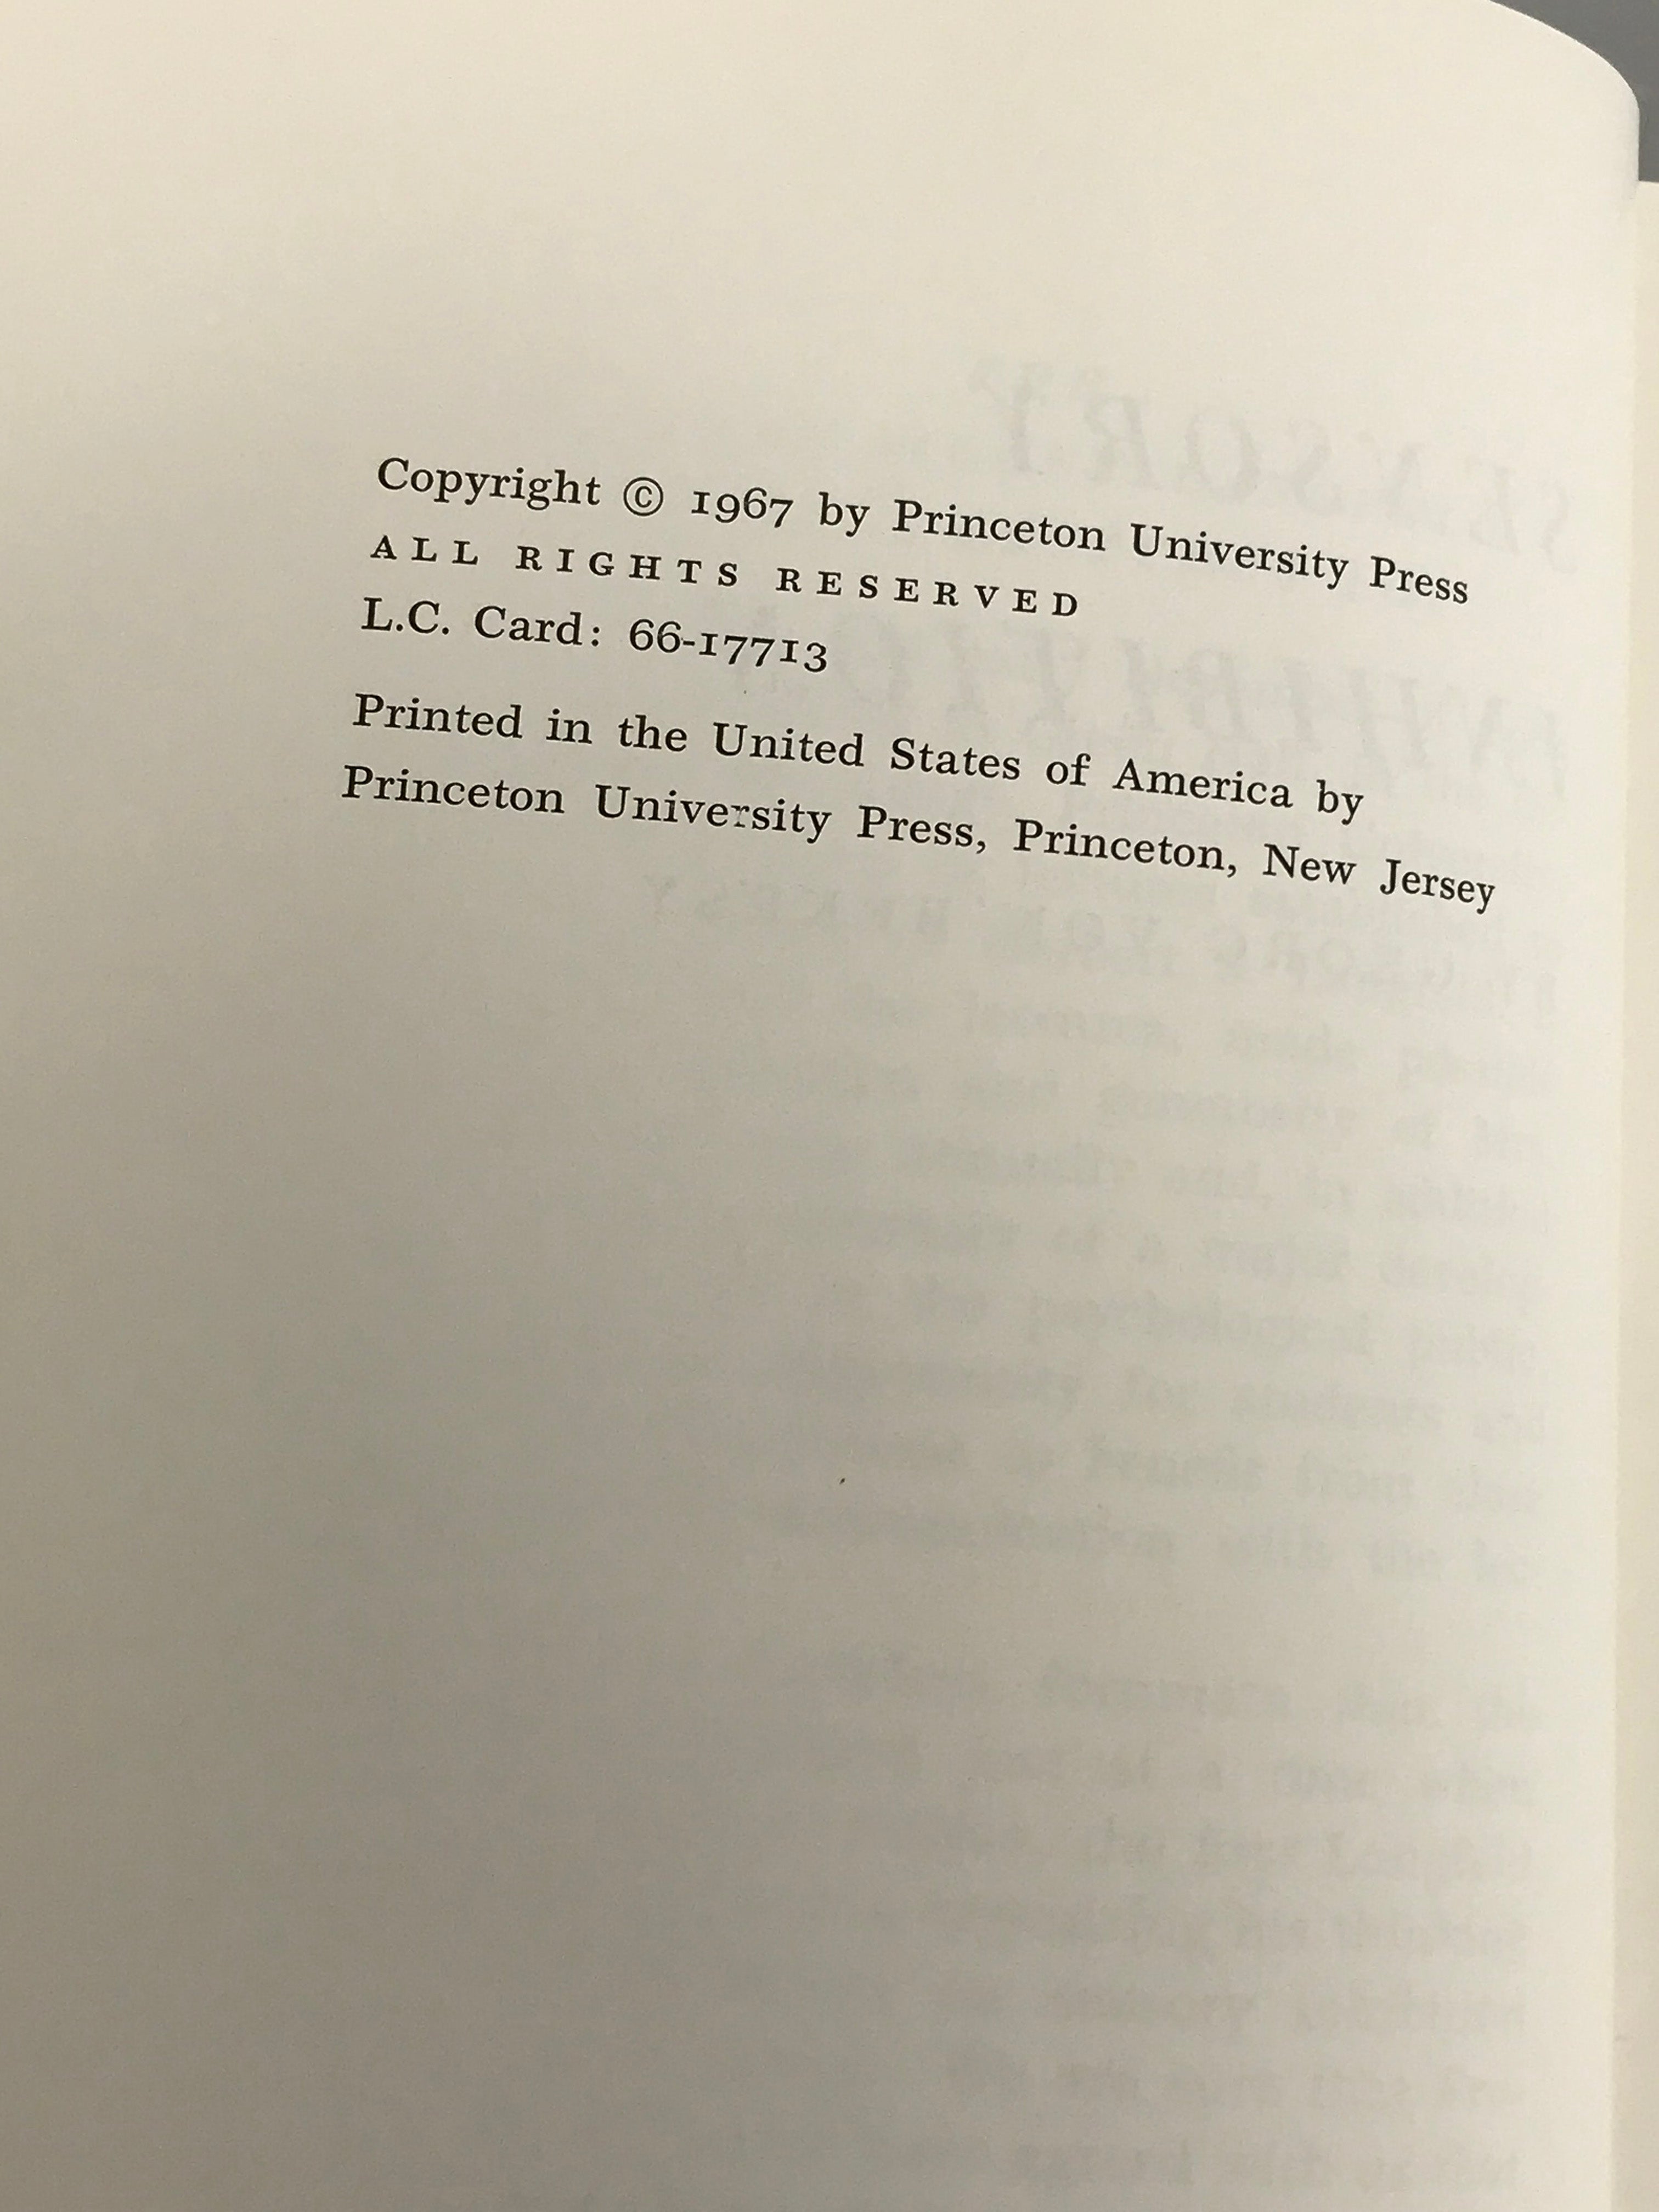 Lot of 3 Sensory Biology/Physiology Books 1965-1967 HC DJ